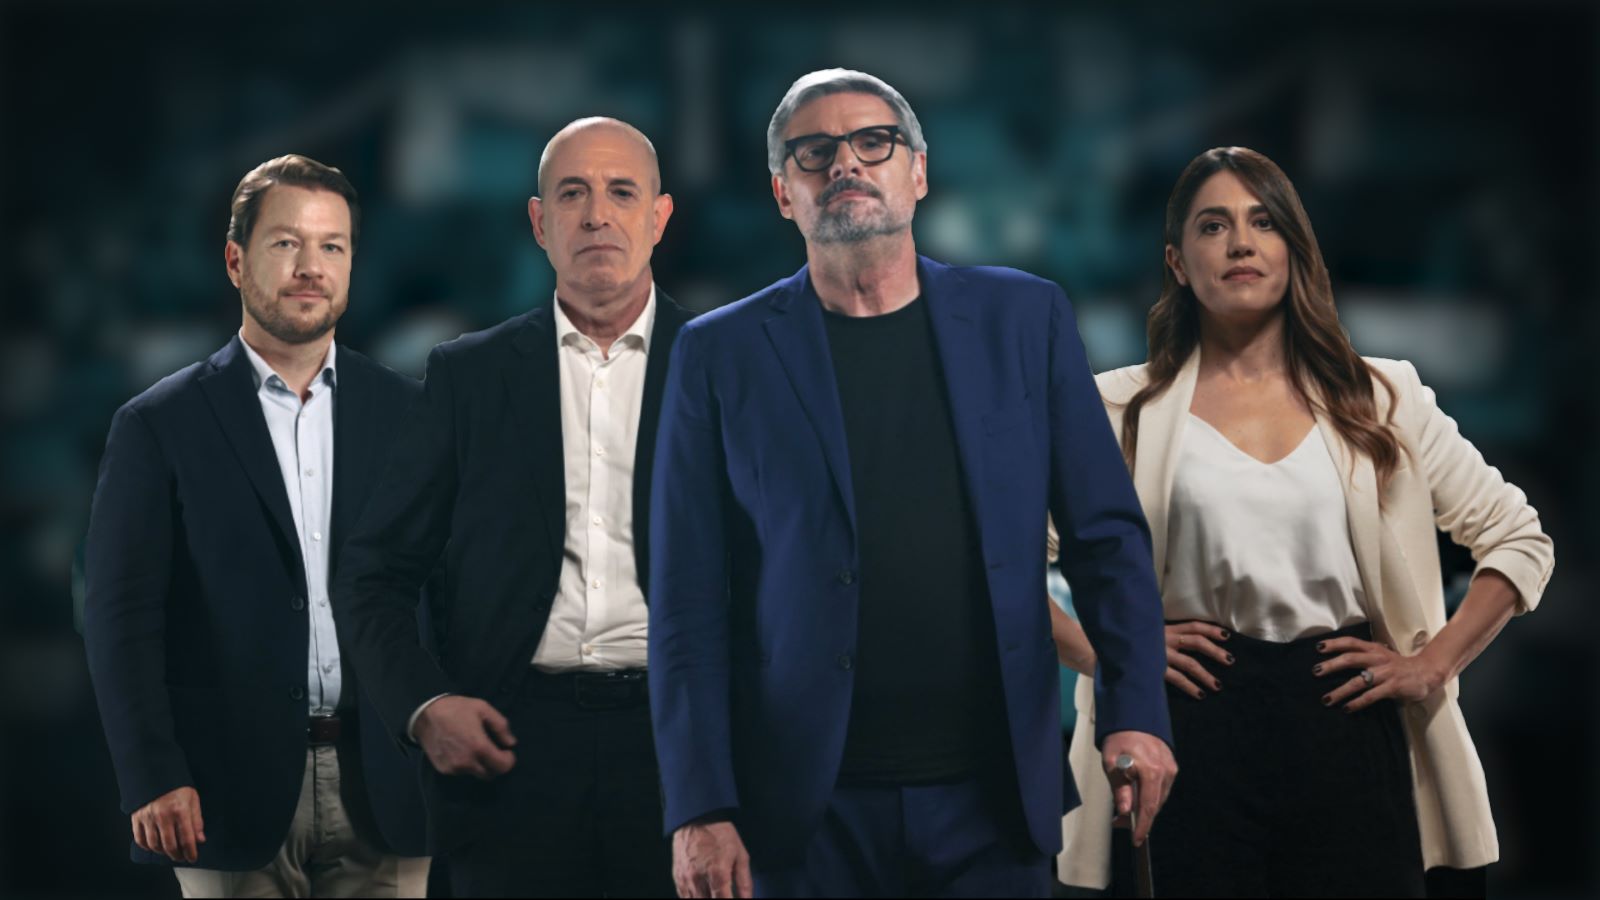 Faking It - Bugie O Verità?: Pino Rinaldi presenta la serie True Crime, stasera su Nove